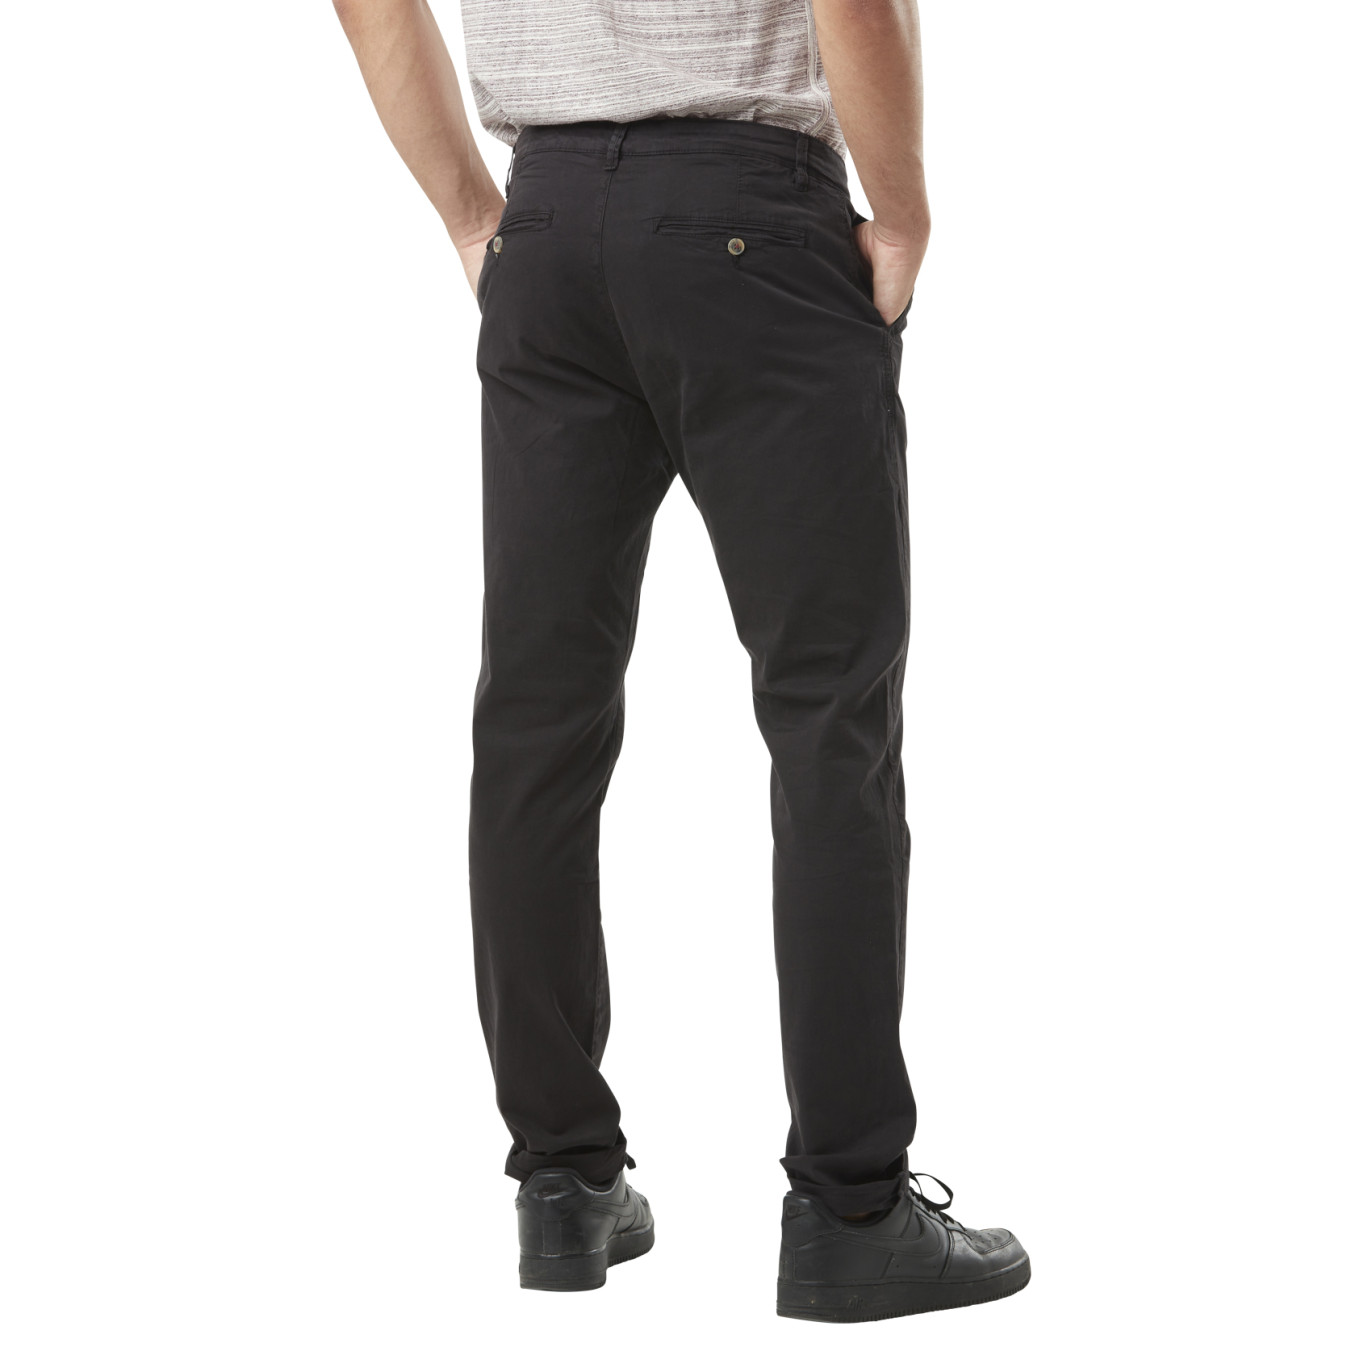 Pantalon chino slim noir - 5 poches - Prix doux Homme/Pantalon, jean,  bermuda, short de bain - Lora